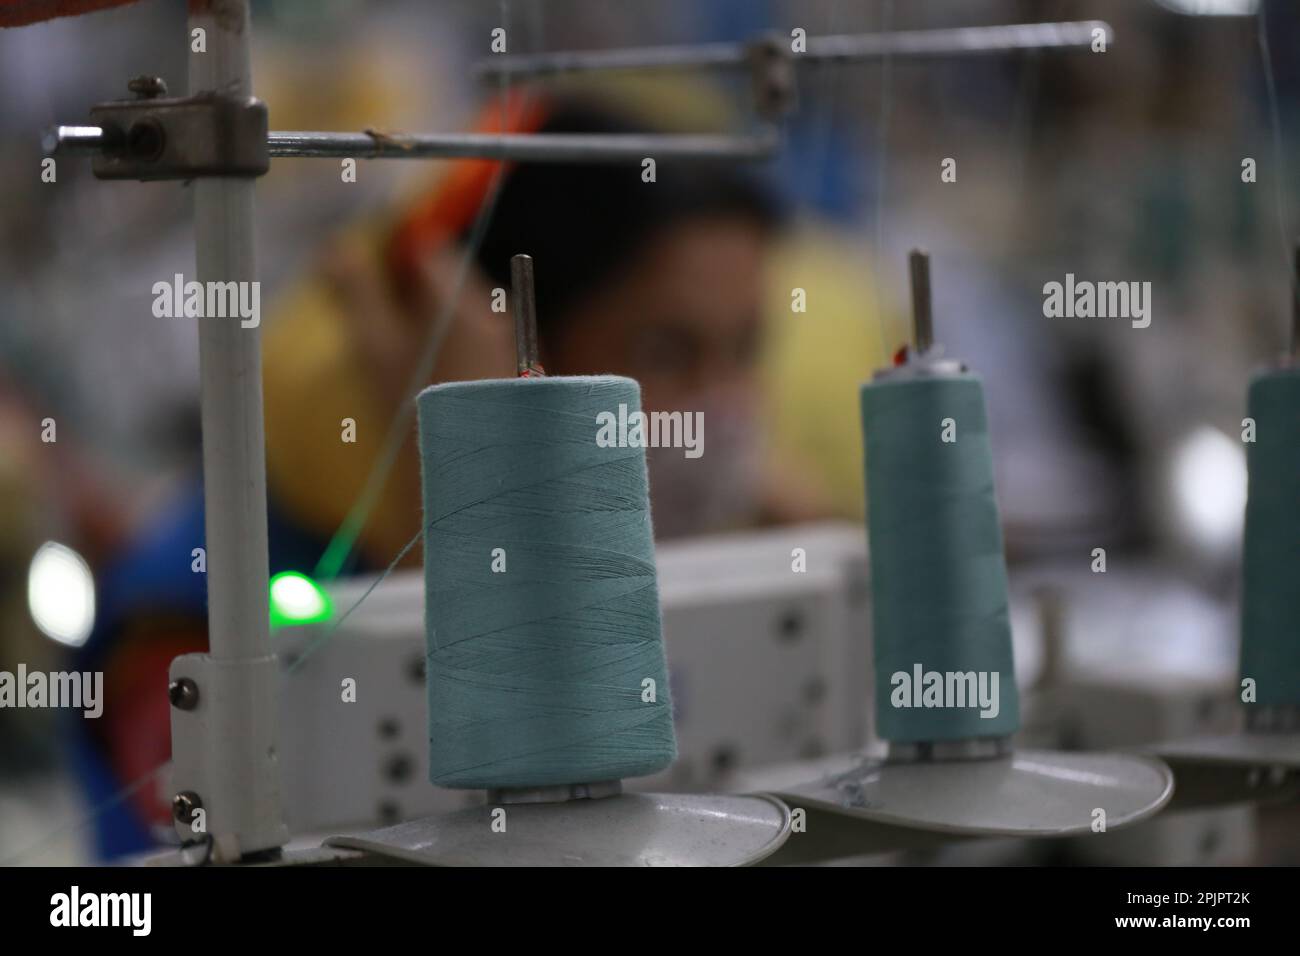 Un ouvrier du vêtement travaille dans une usine de vêtements prête à l'emploi au Bangladesh. Banque D'Images